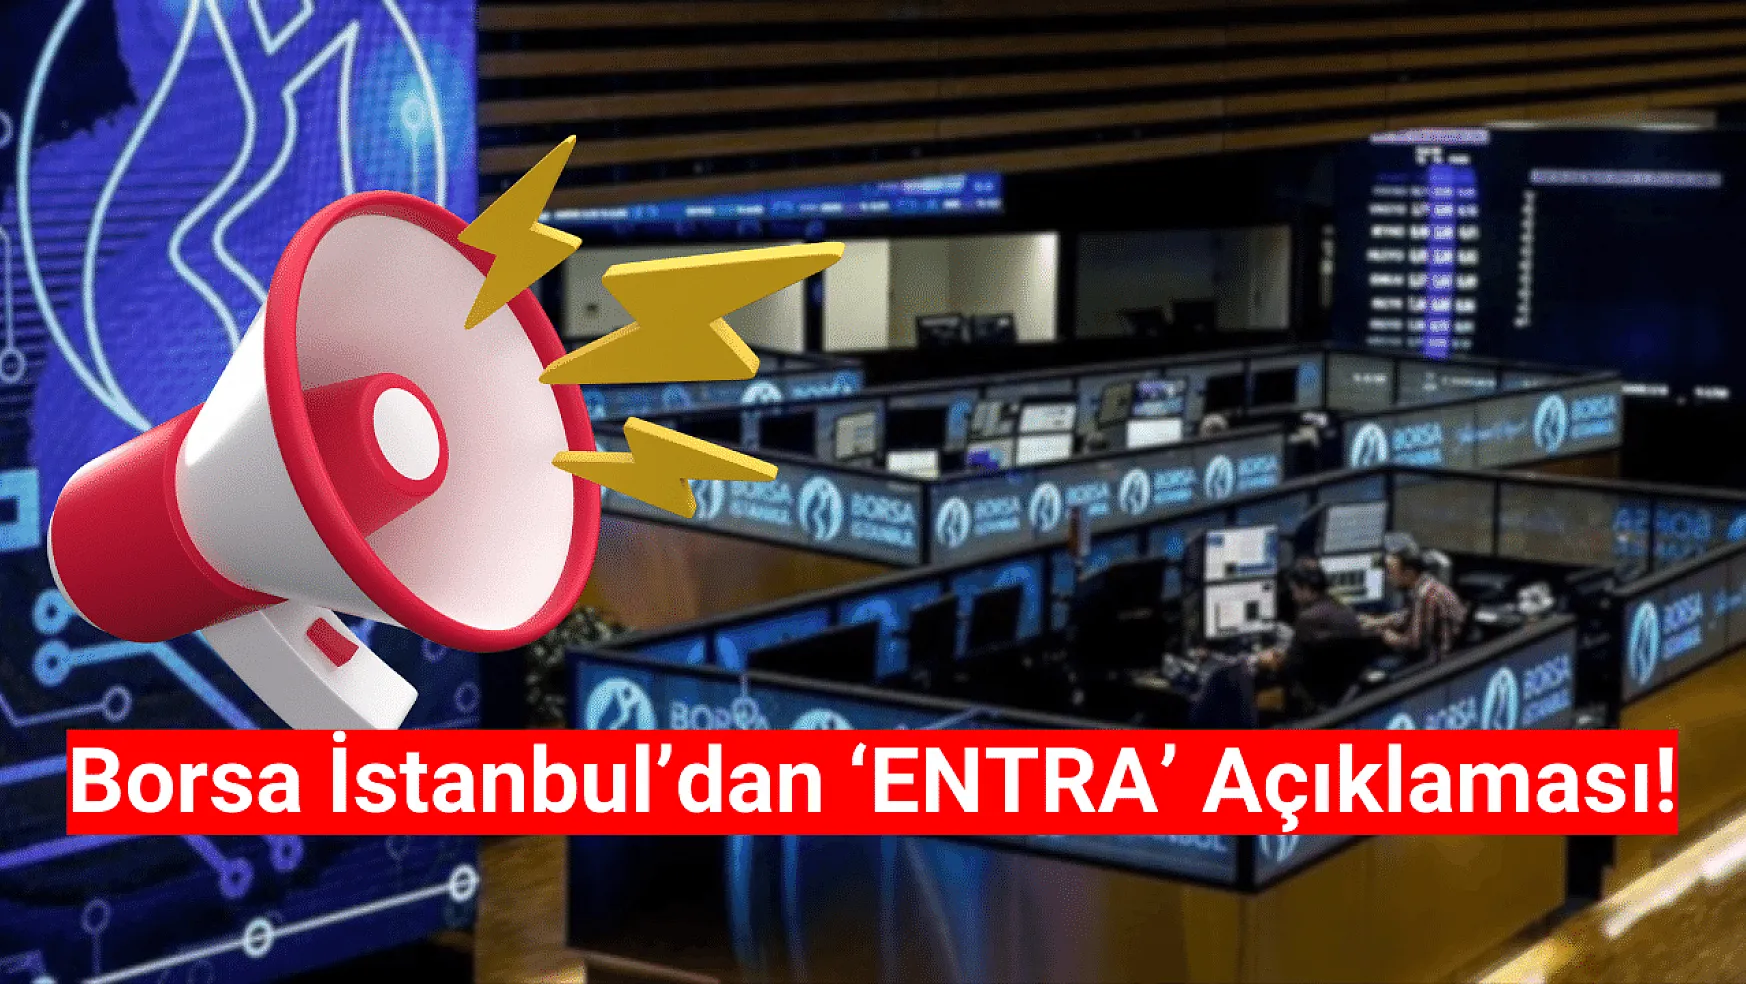 Borsa İstanbul'dan ENTRA açıklaması!